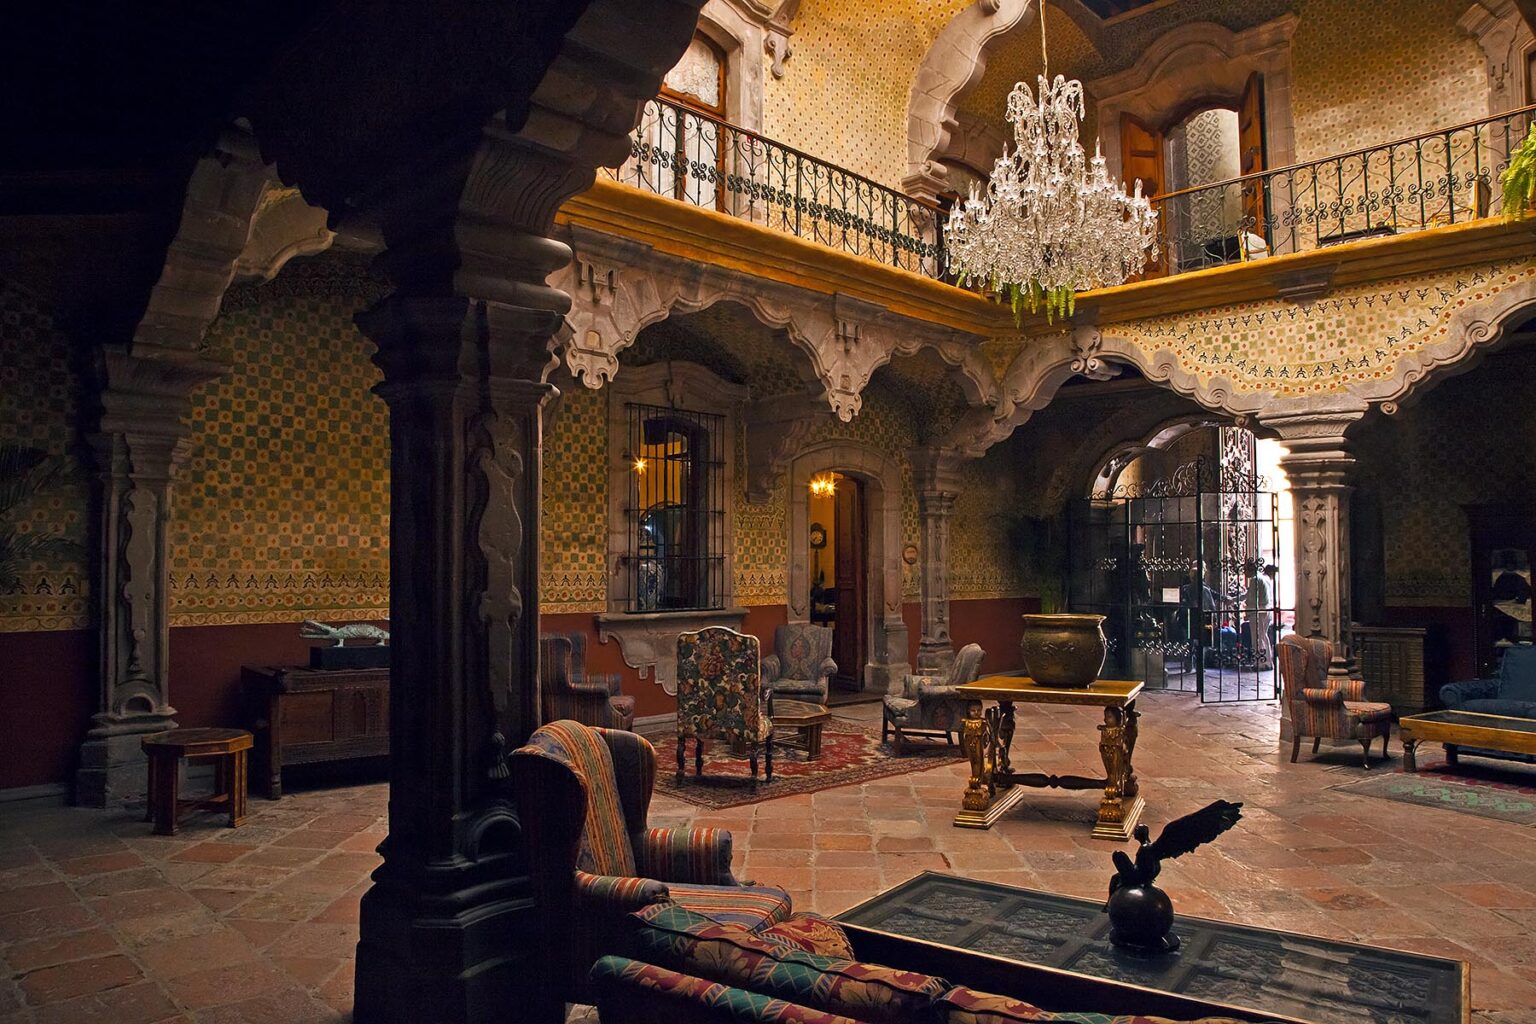 Interior lobby of LA CASA DE MARQUESA HOTEL in the  historical center of the city of QUERETERO - MEXICO